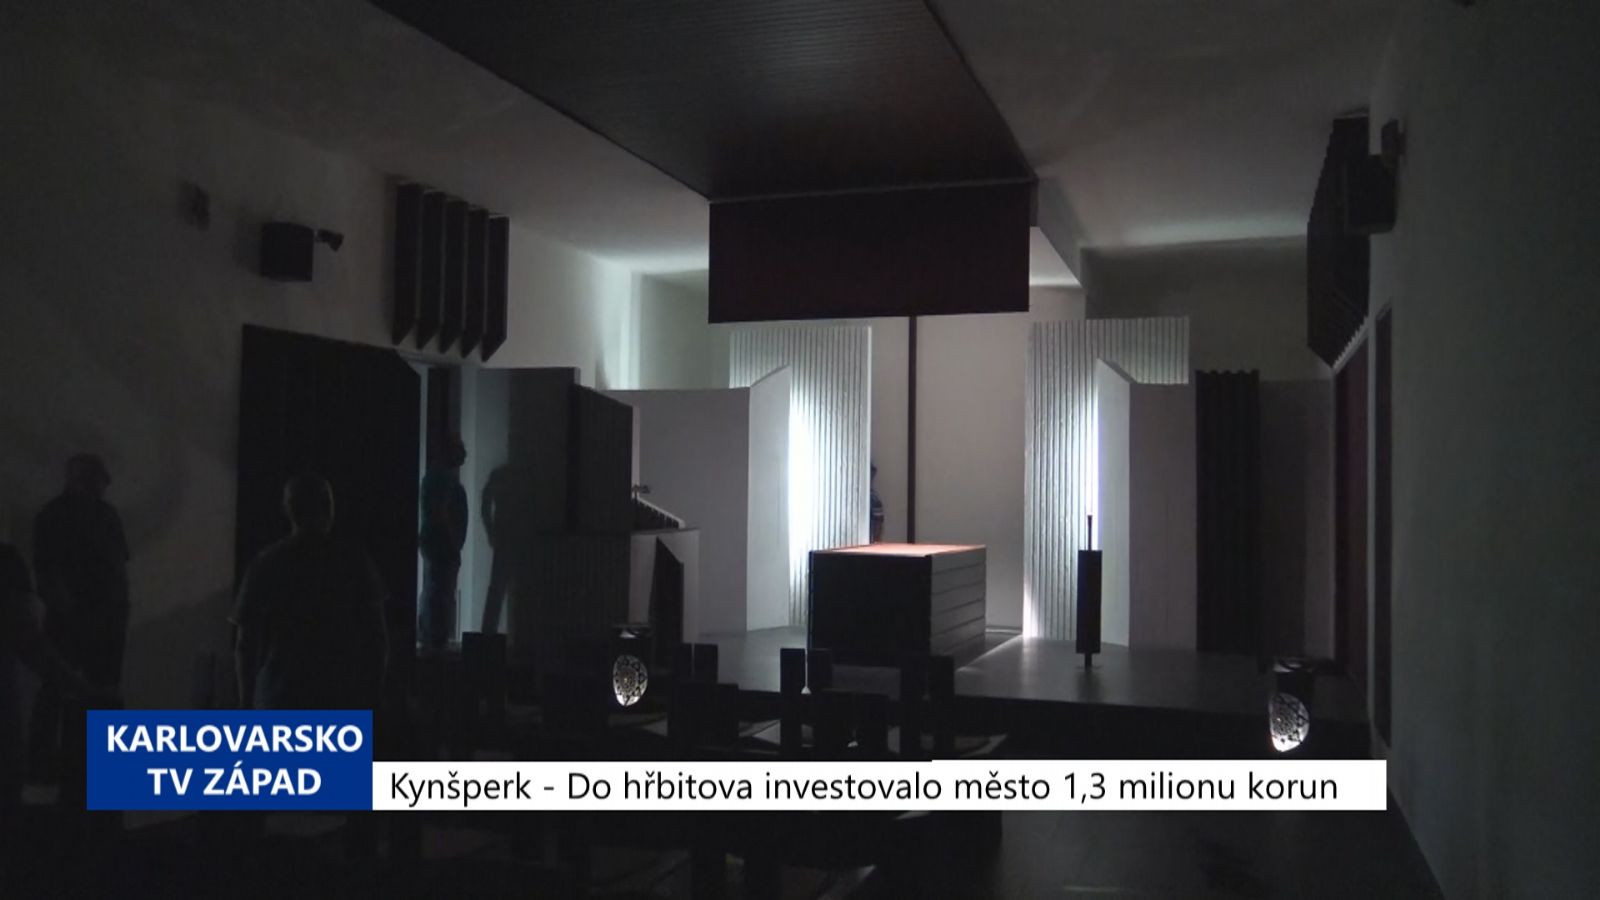 Kynšperk: Do hřbitova investovalo město 1,3 milionu korun (TV Západ)